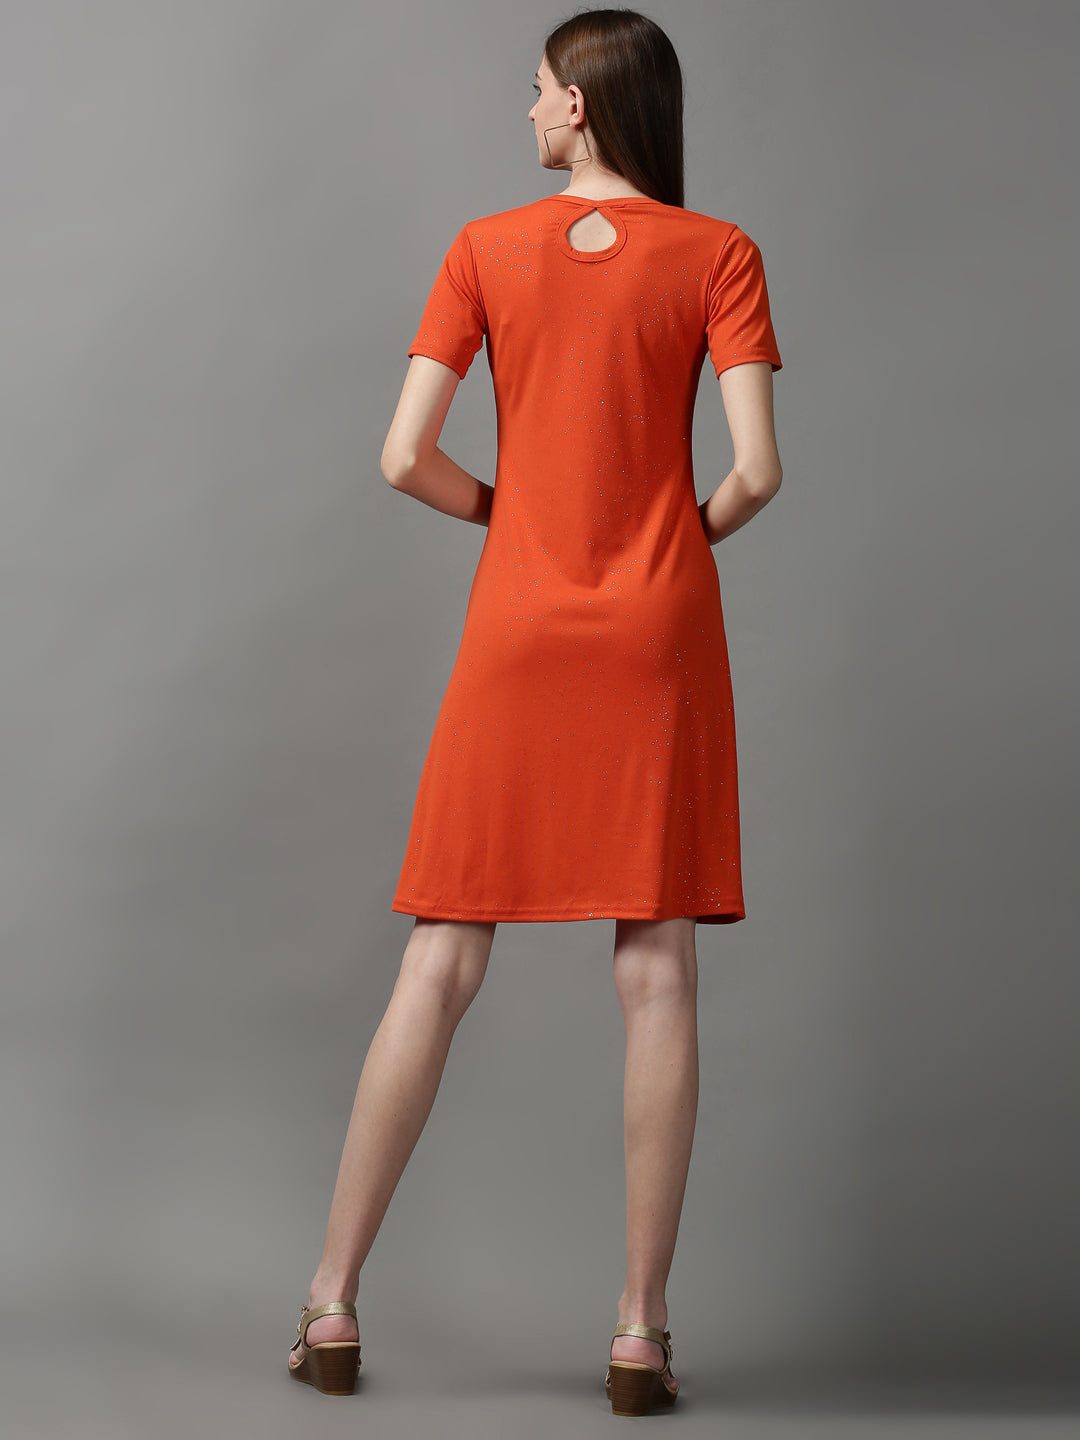 Women's Orange Embellished A-Line Dress